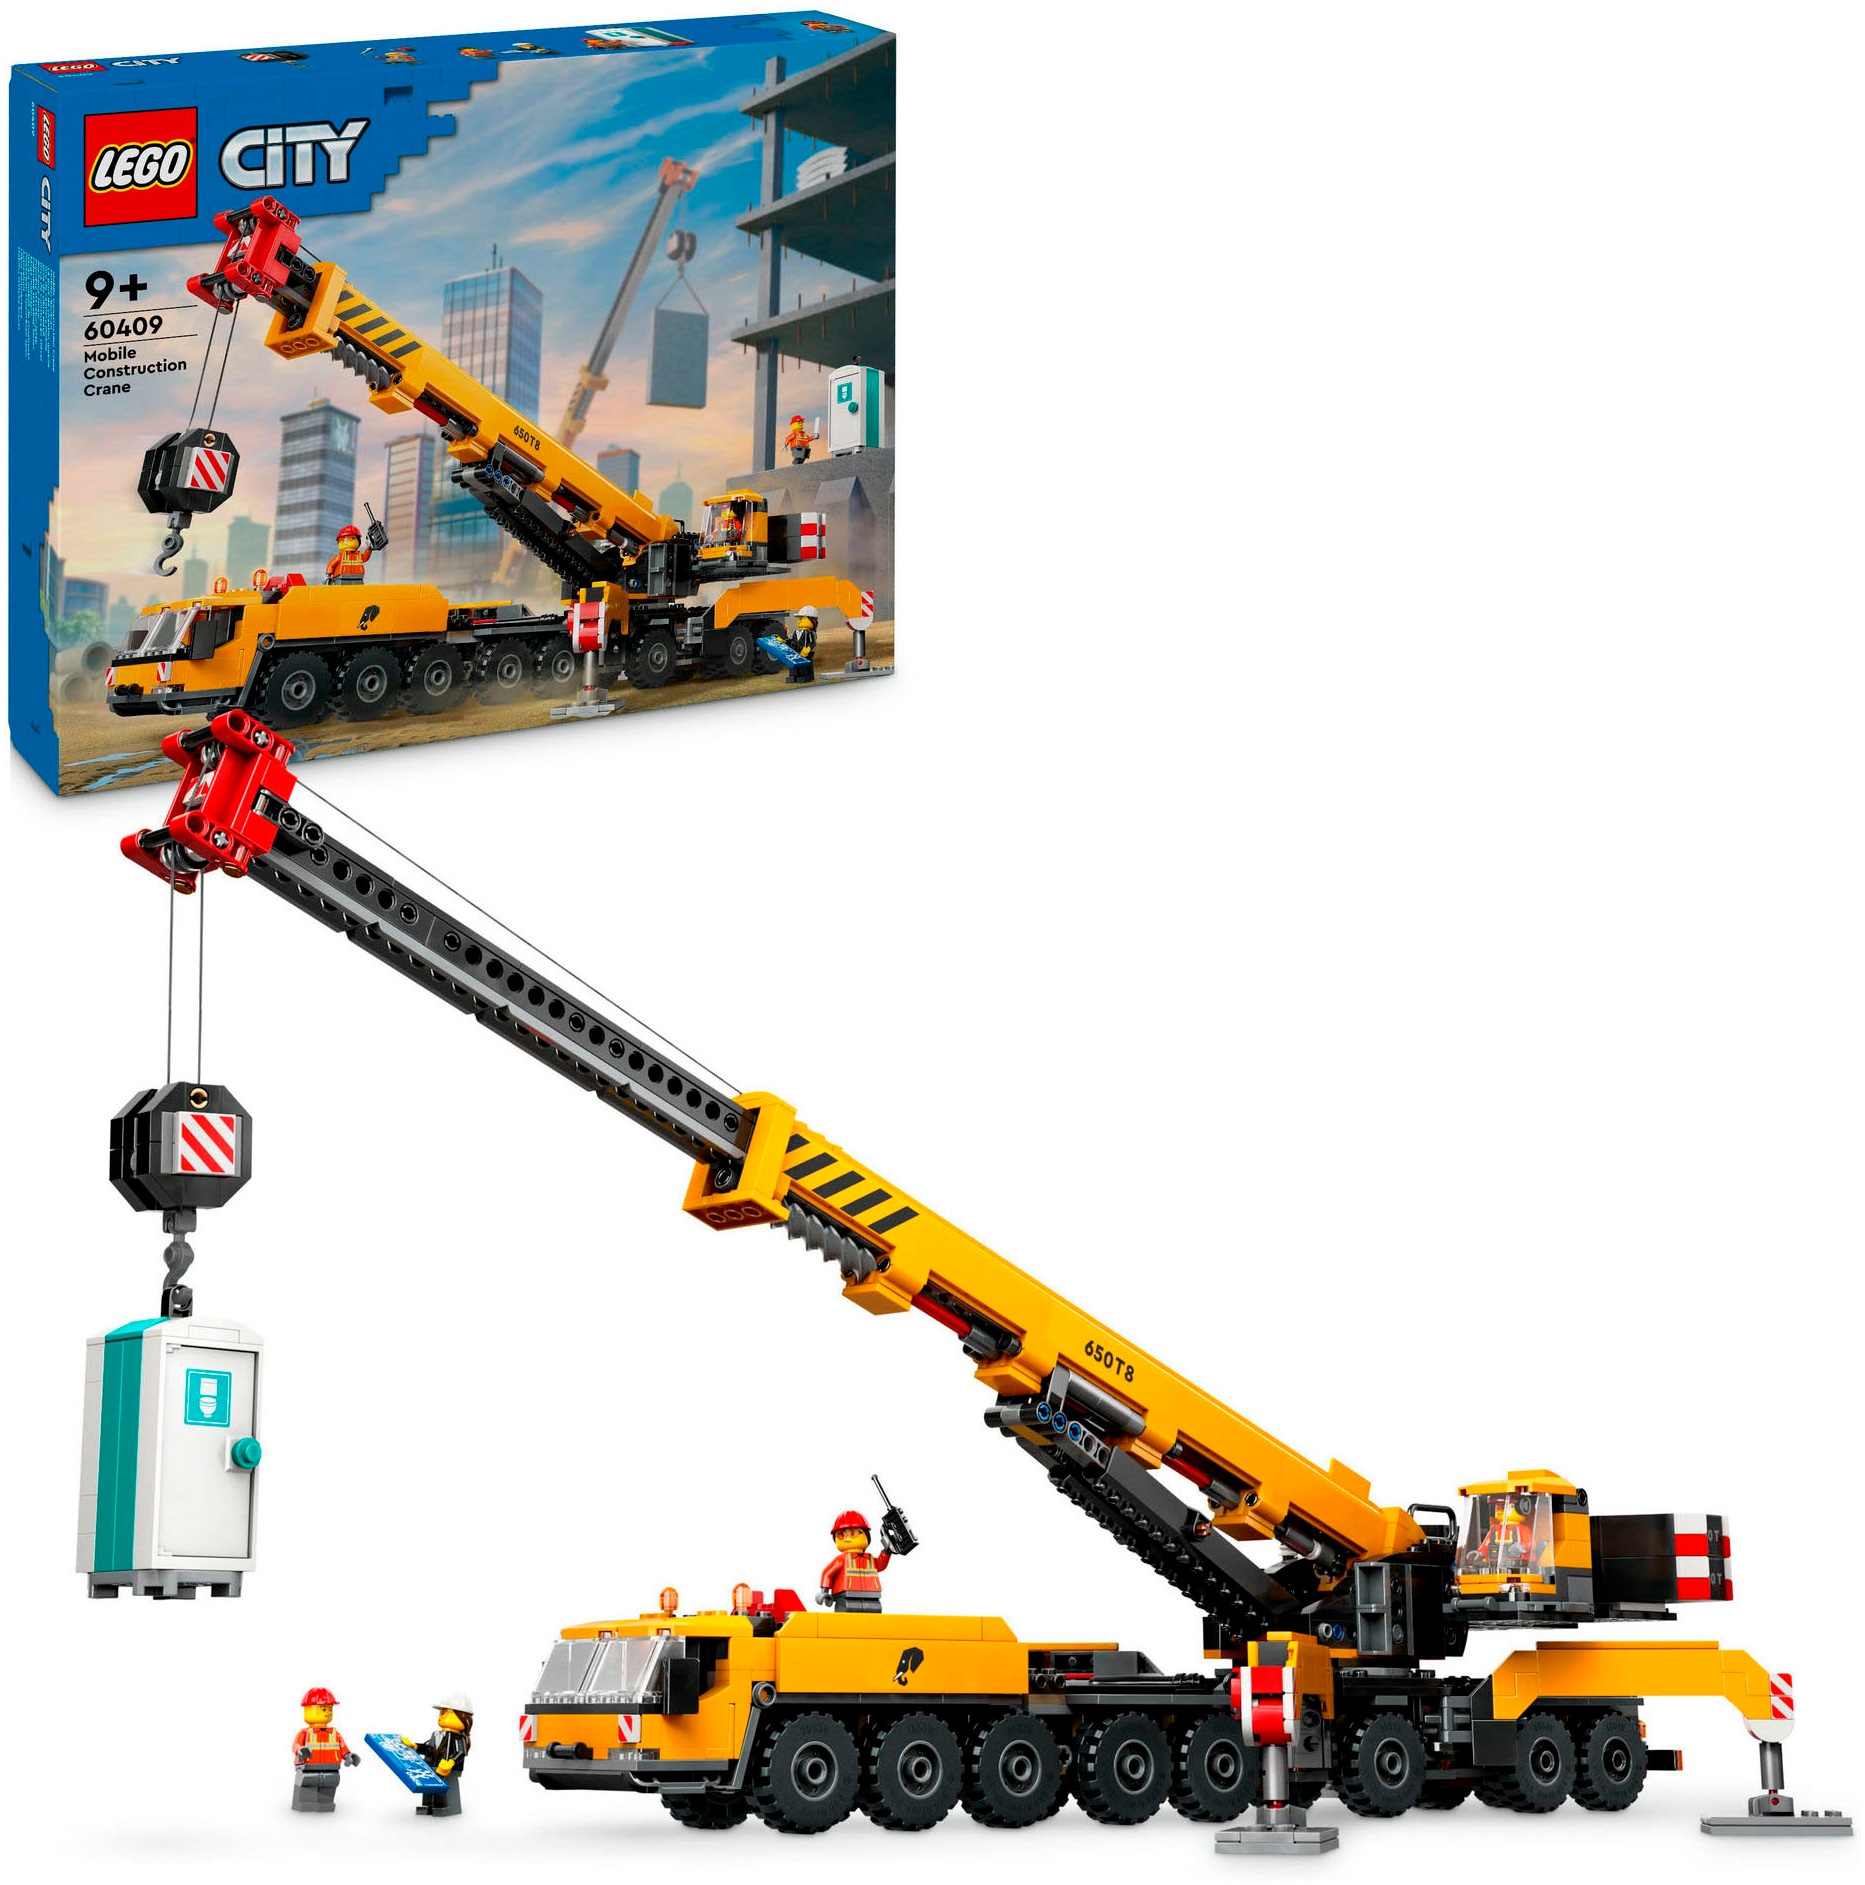 Konstruktionsspielsteine »Mobiler Baukran (60409), LEGO City«, (1116 St.), Made in Europe